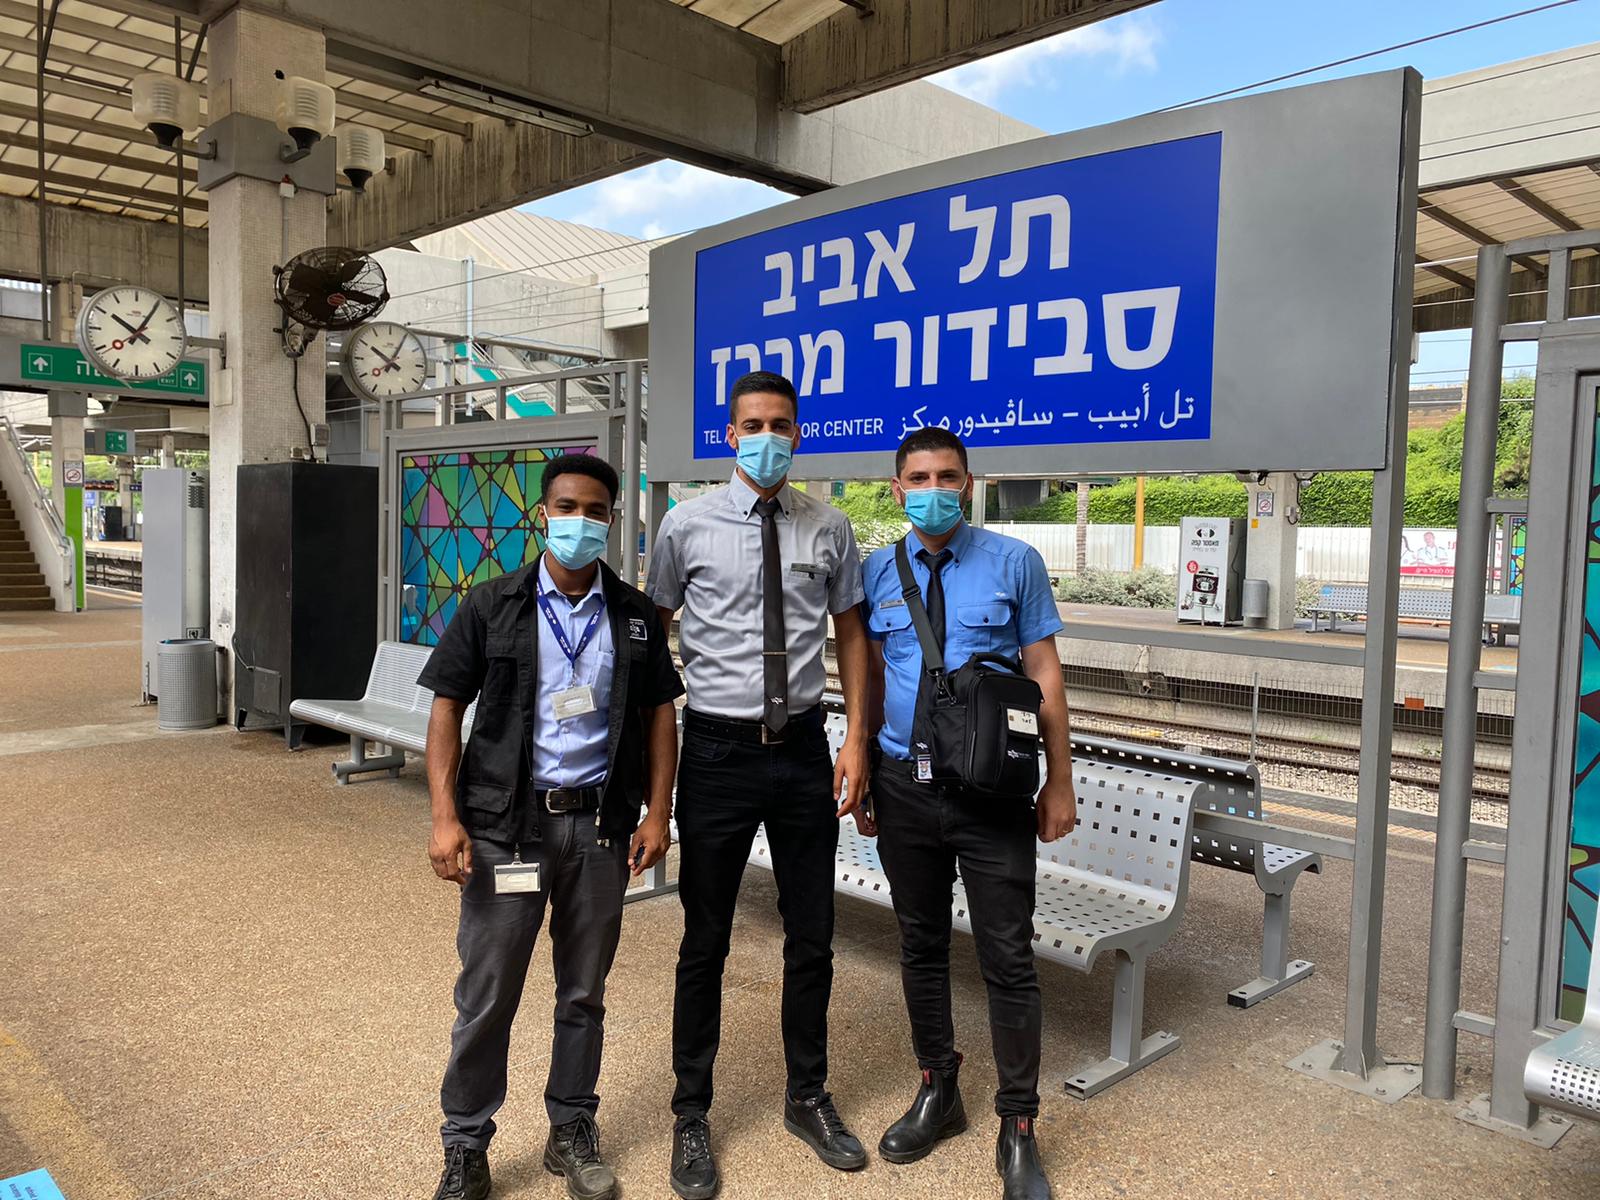 הצוות שסייע לאם וילדיה צילום רכבת ישראל 